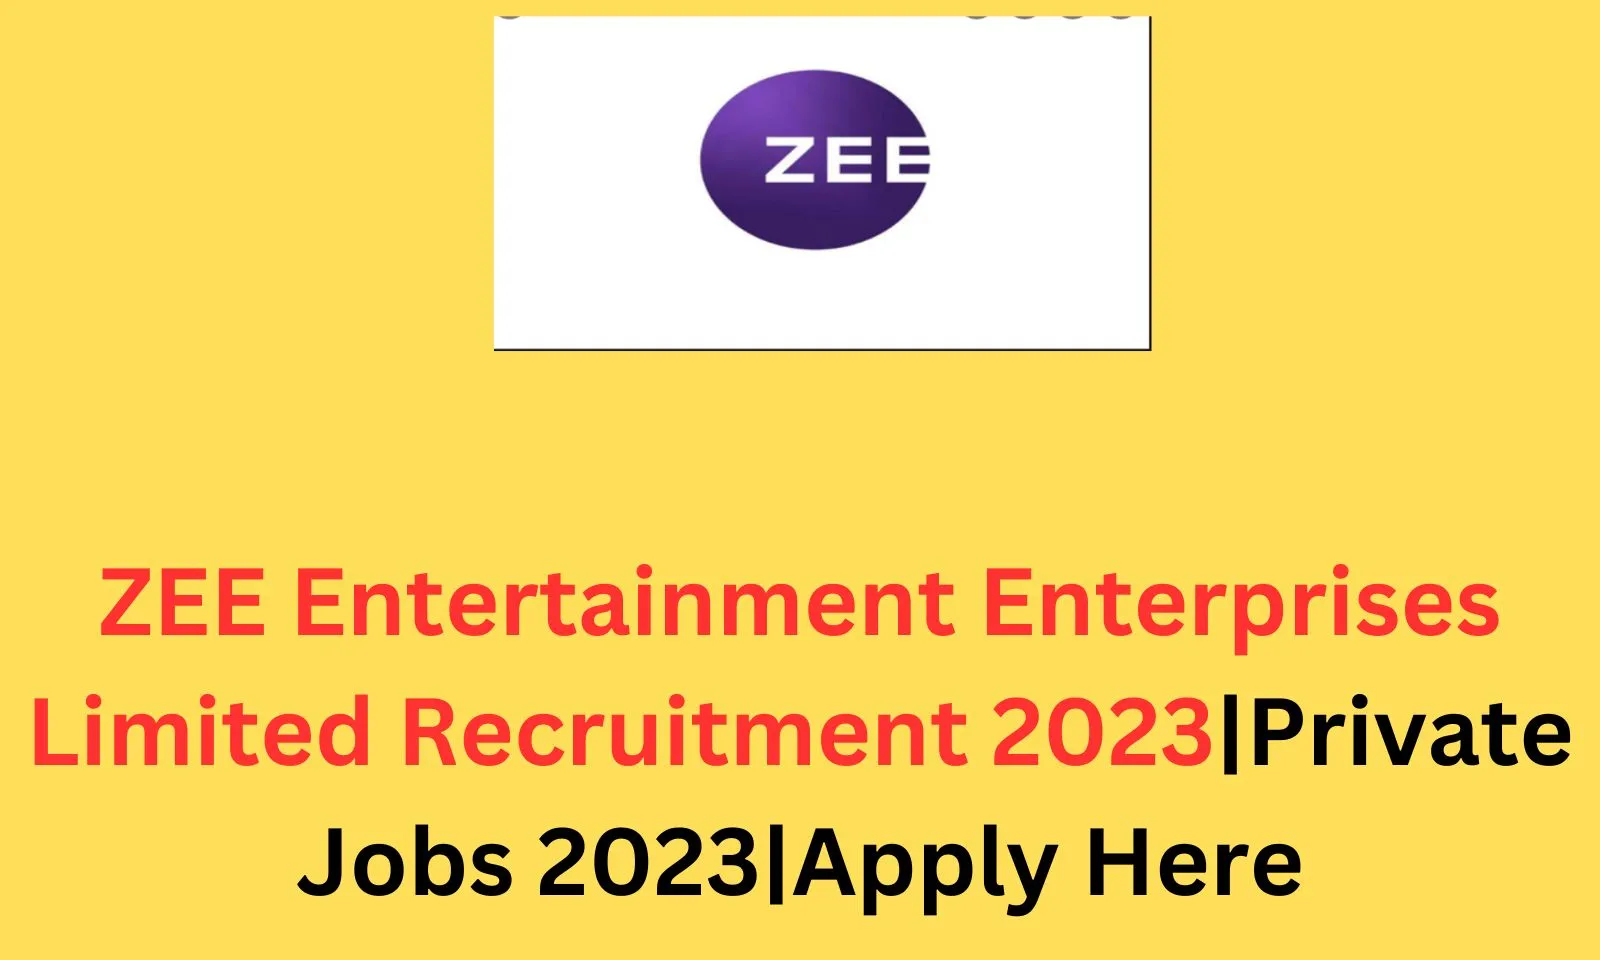 ZEE Entertainment Enterprises